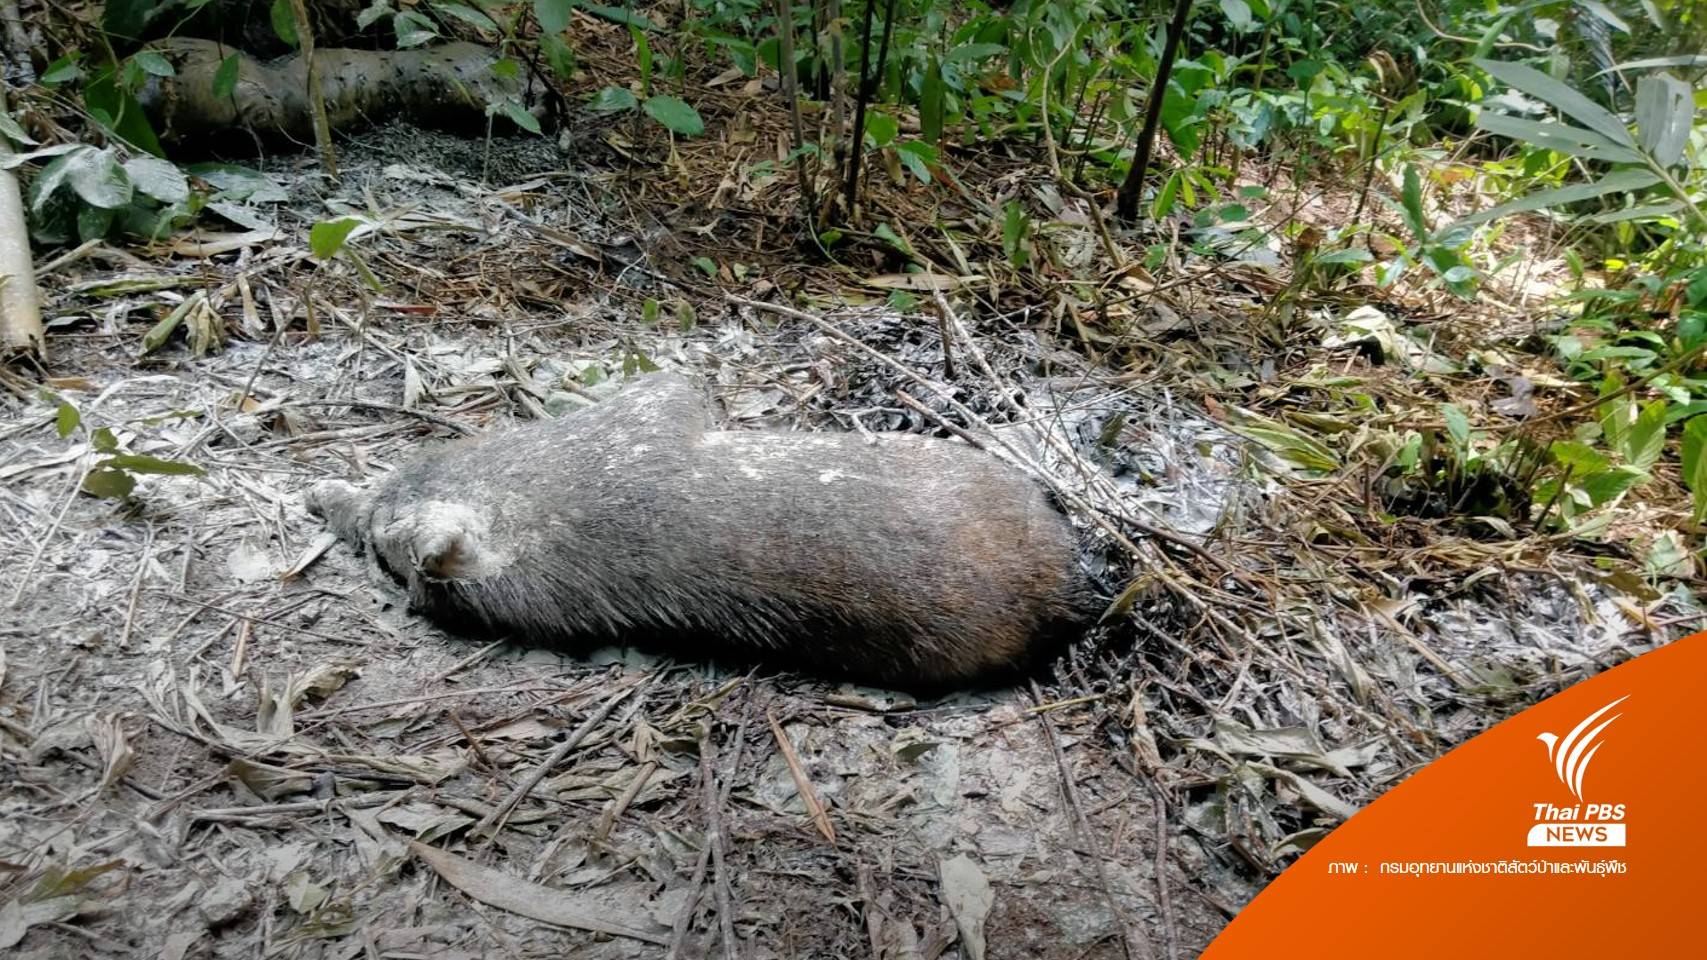 โรค PRRS ระบาด "หมูป่า" ตาย 28 ตัว ในป่าท่าแซะ